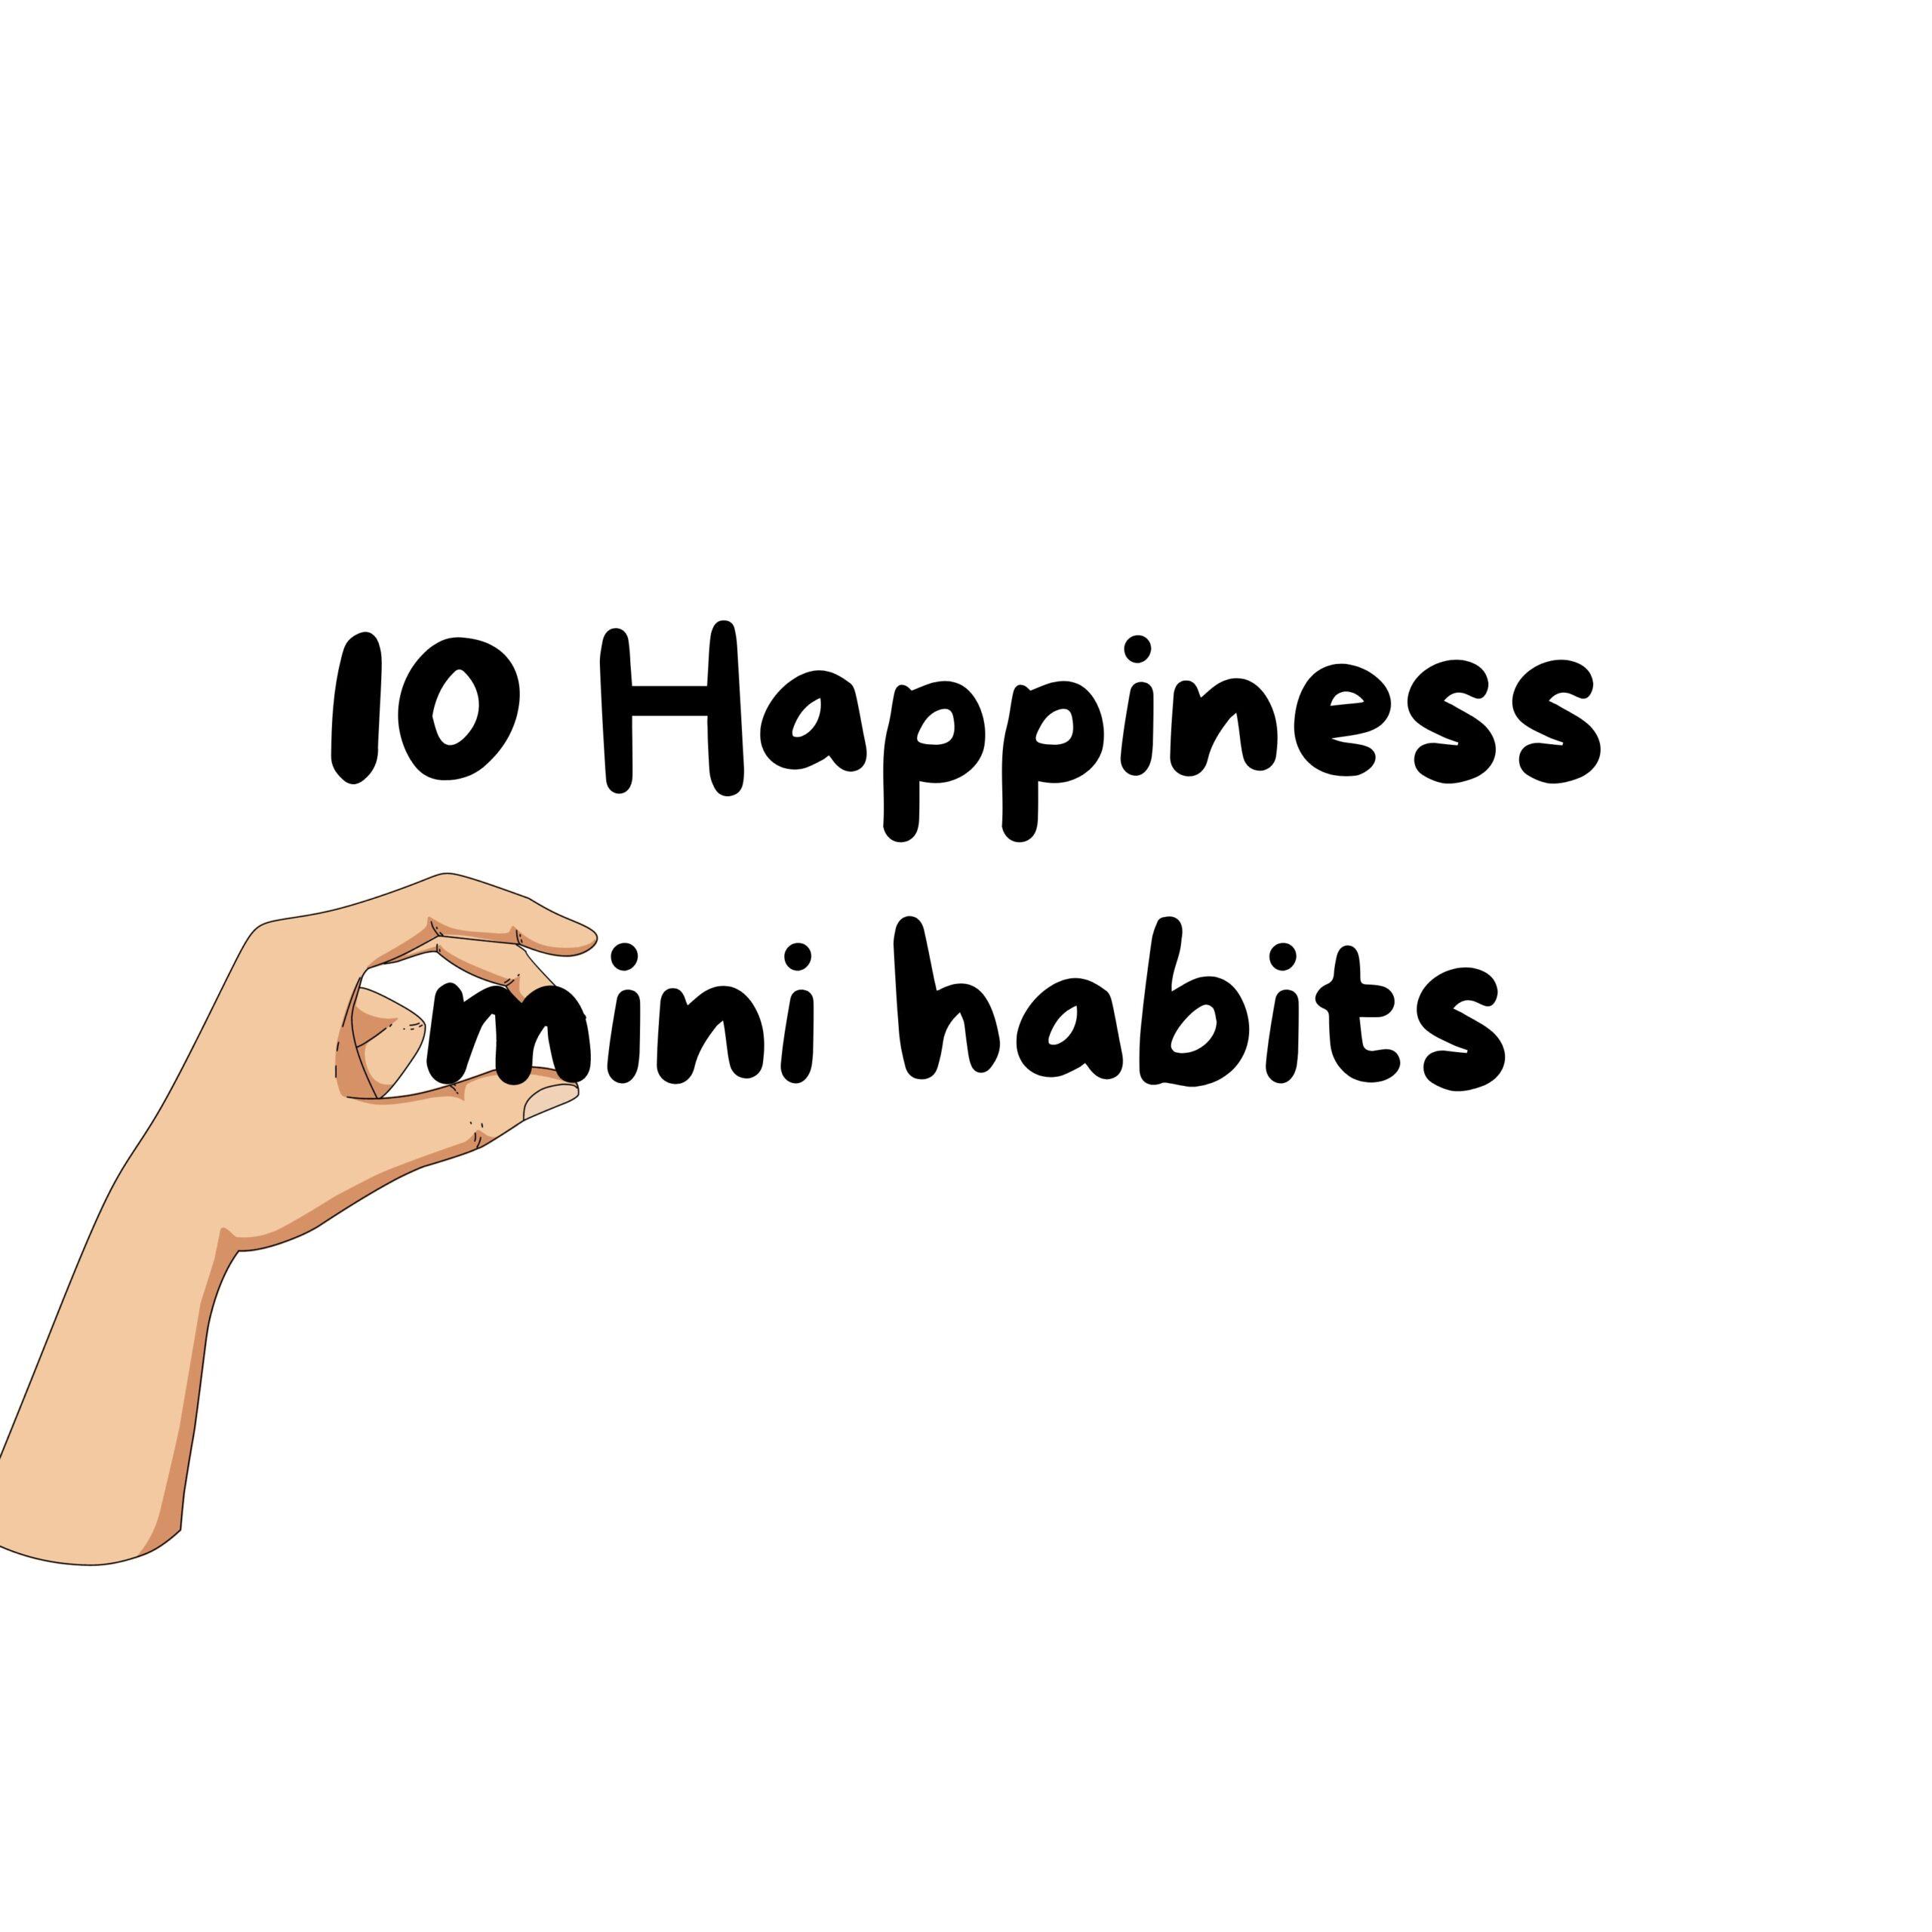 10 Happiness mini habits